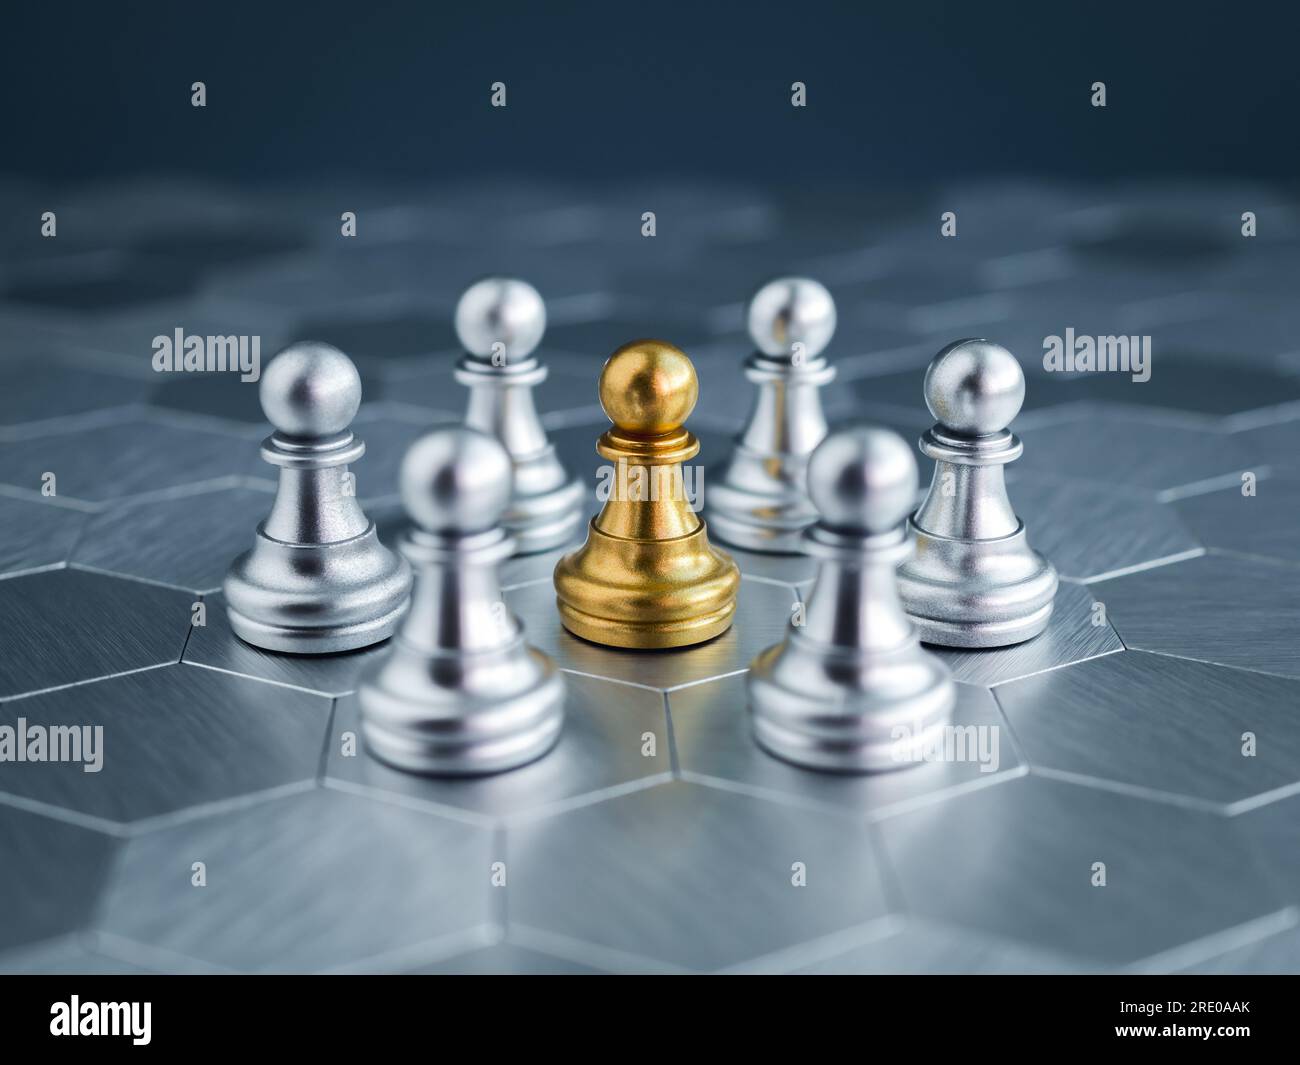 Das goldene Schachfiguren, das in der Mitte der silbernen Schachfiguren-Gruppe auf einem sechseckigen Hintergrund steht, hebt sich von der Menge ab. Leadersh Stockfoto